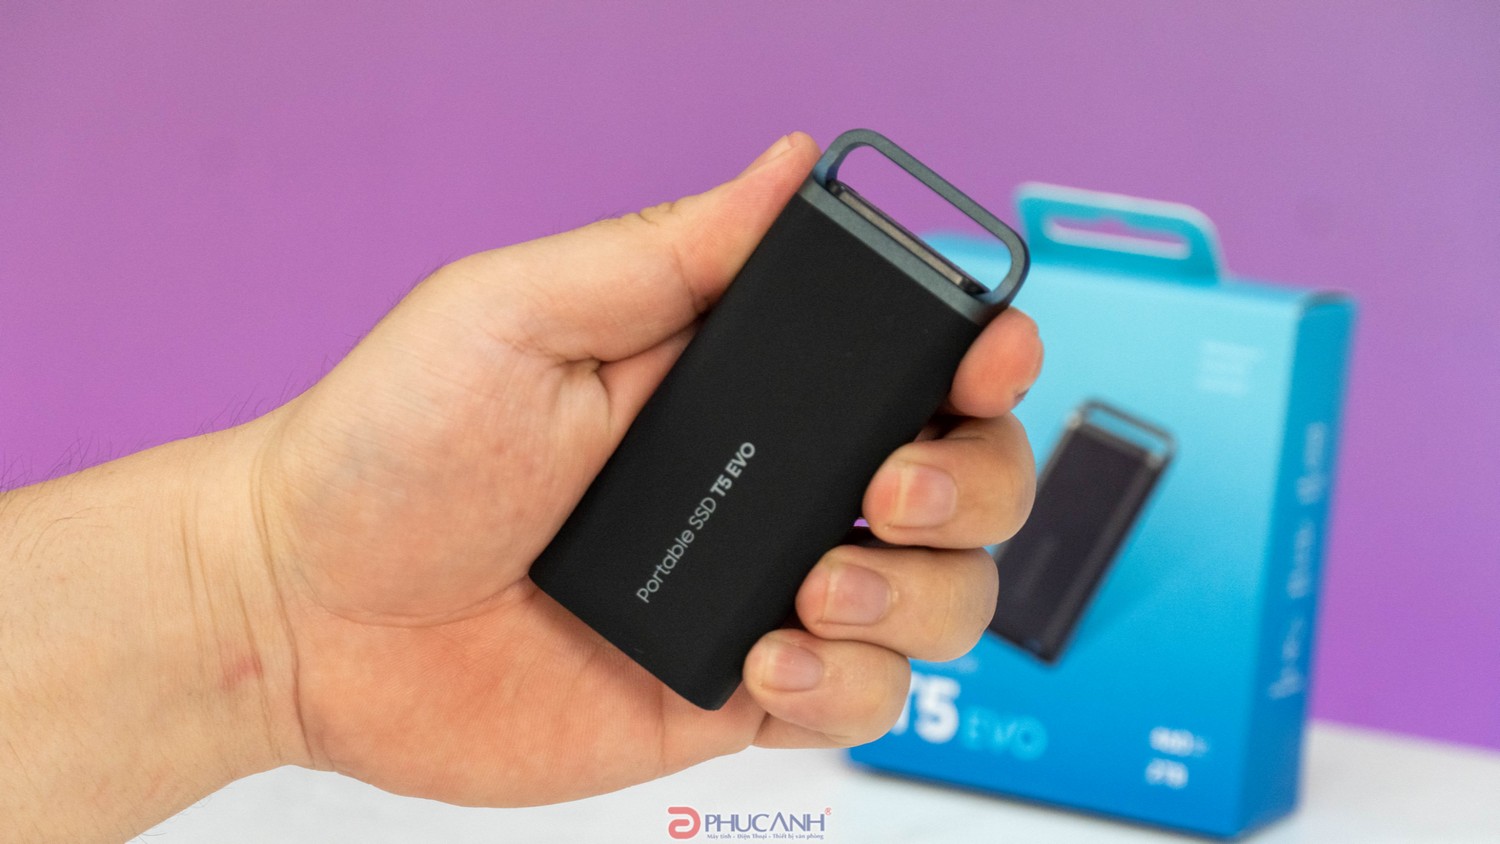 Đánh giá Ổ Cứng Di Động SSD Samsung T5 EVO - Nhỏ gọn, tốc độ cao, bảo mật tốt